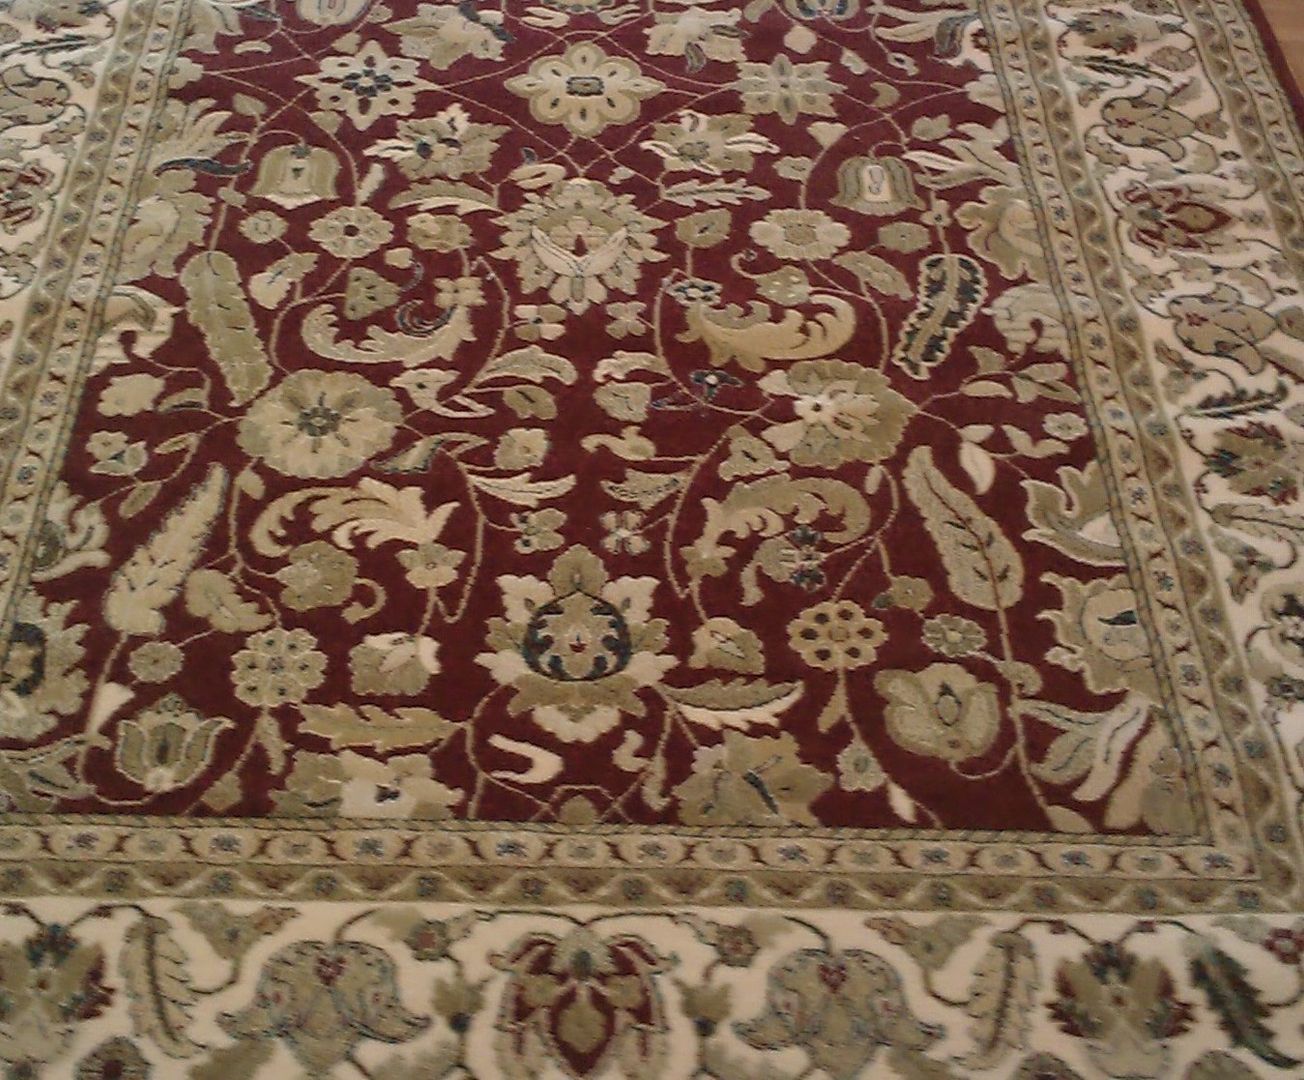 Alfombras Dekor, Carpetfil Alfombras, s.l. Carpetfil Alfombras, s.l. أرضيات Carpets & rugs